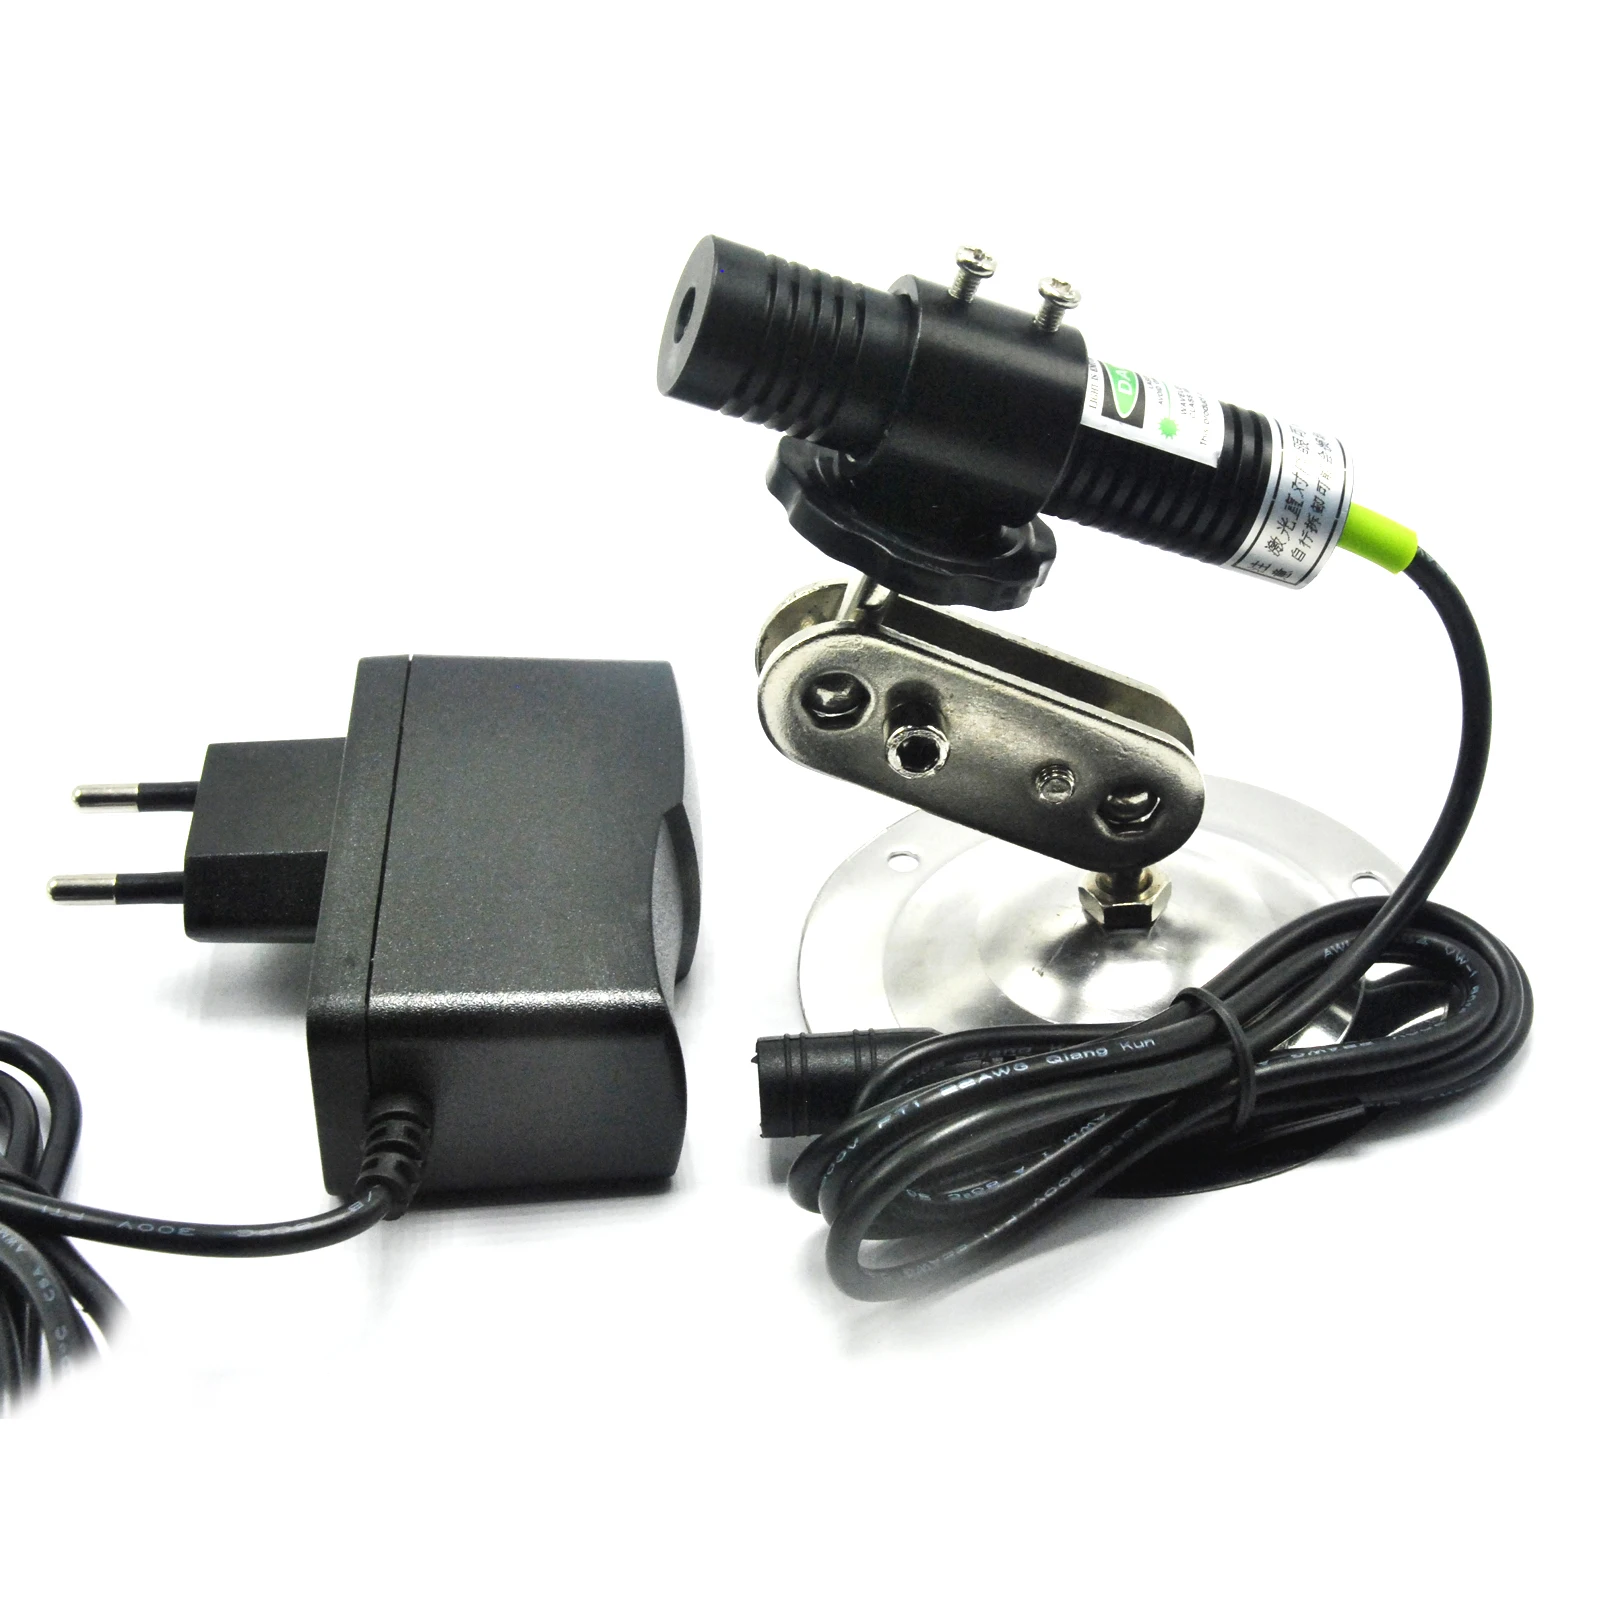 Зеленый лазерный диодный точечный генератор, модуль для выравнивания, локатор, режущий аппарат, эффекты освещения по дереву, адаптер и держ... от AliExpress RU&CIS NEW